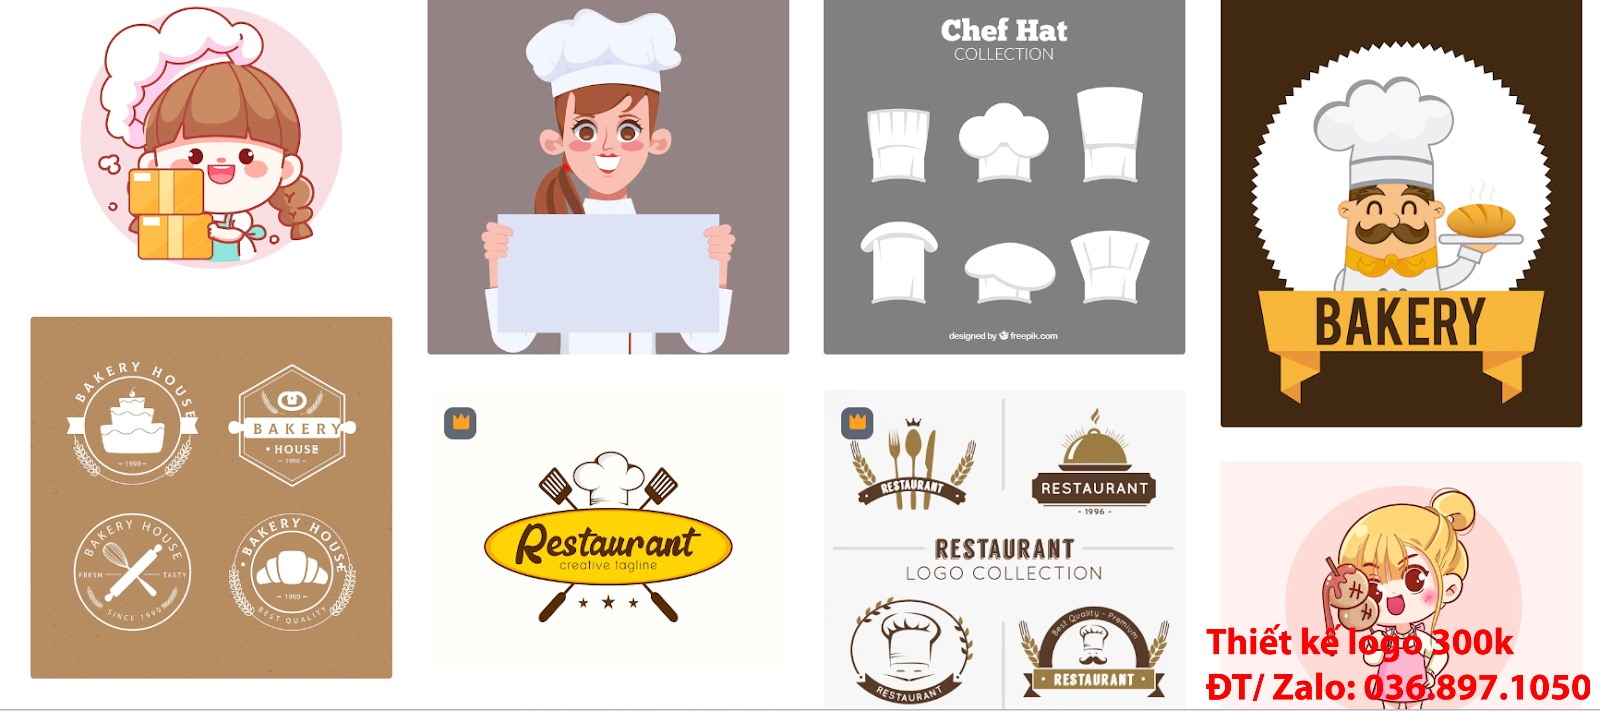 Công ty cung cấp dịch vụ Thiết kế logo đầu bếp chef cook chuyên nghiệp giá rẻ uy tín từ 300k - 500k